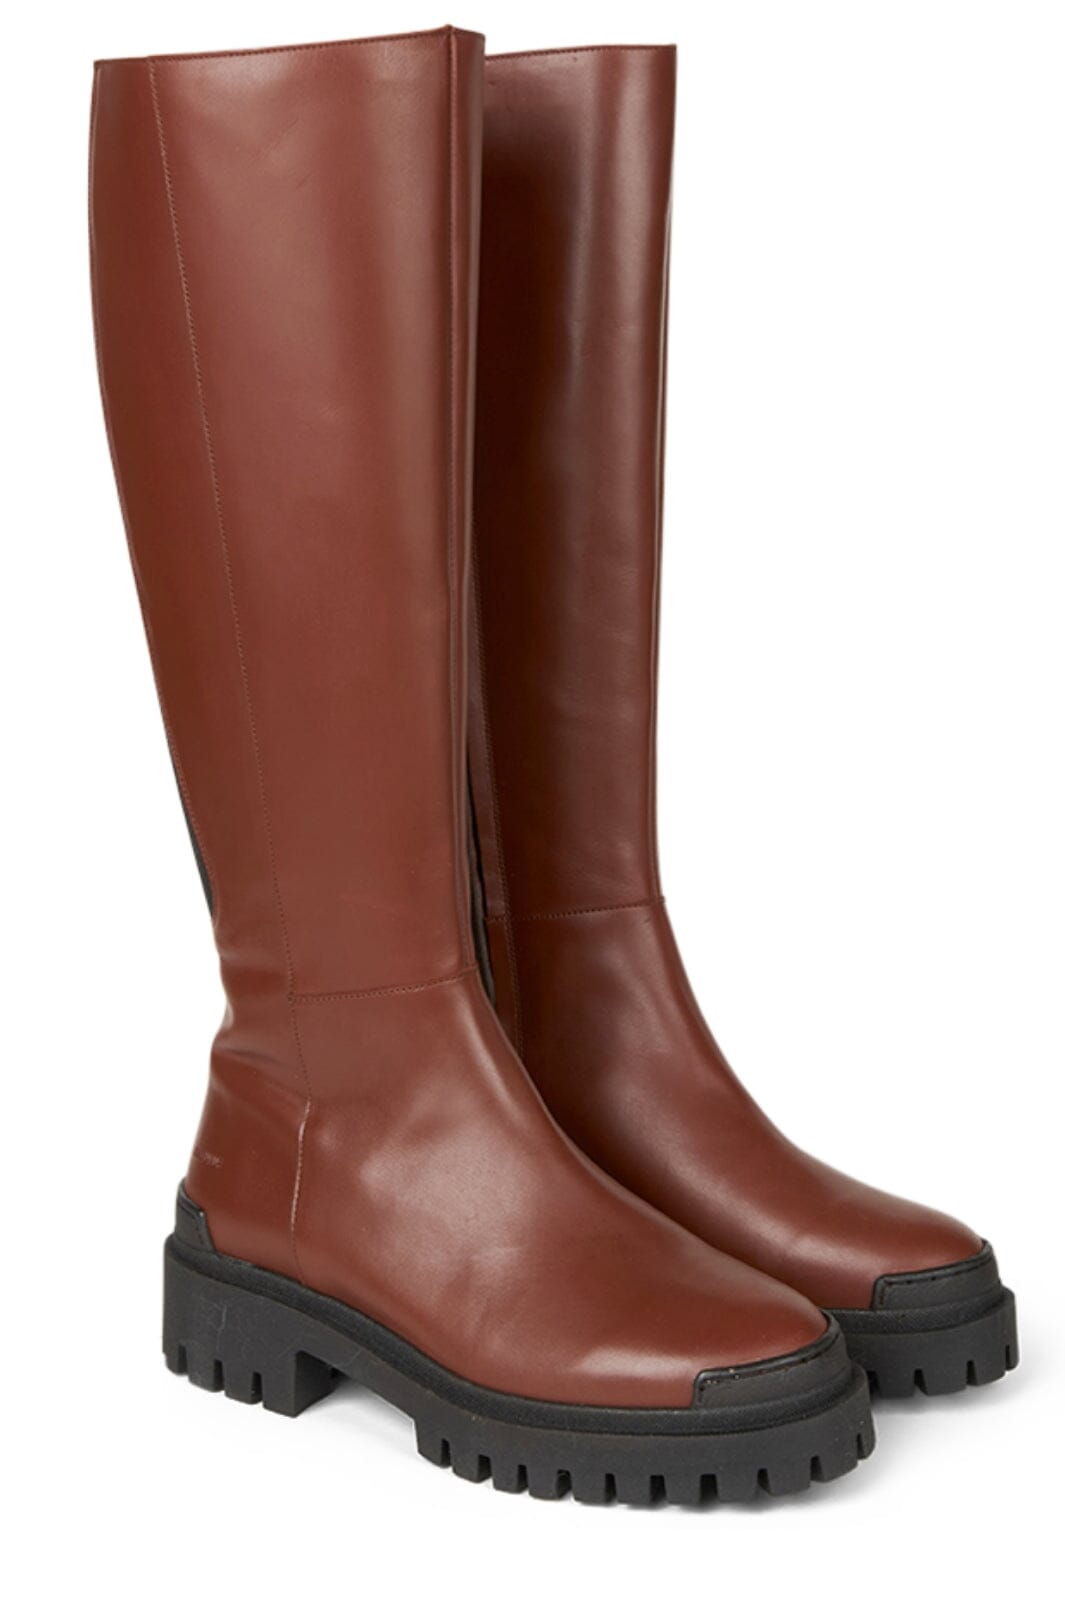 Angulus - High-leg boot - 1705/019 Terracotta/Black Støvler 